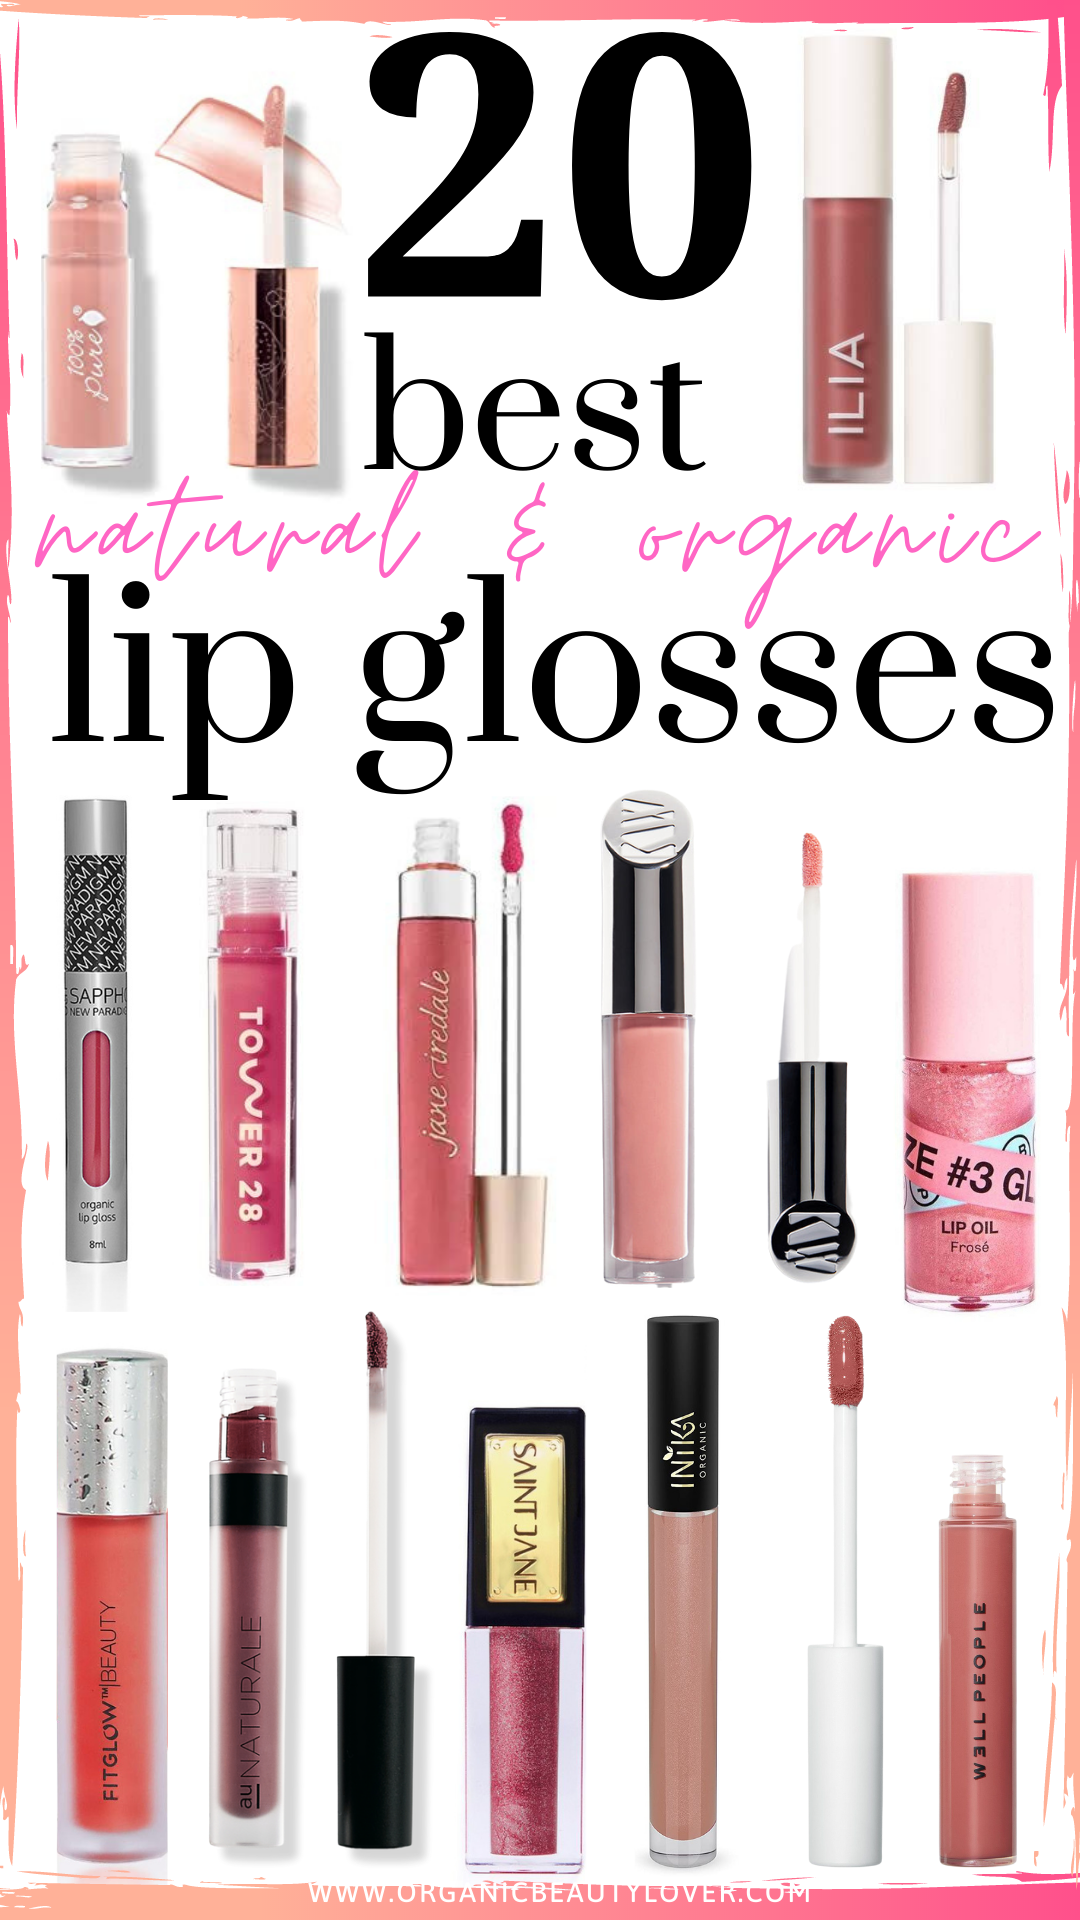 Best natural lip gloss